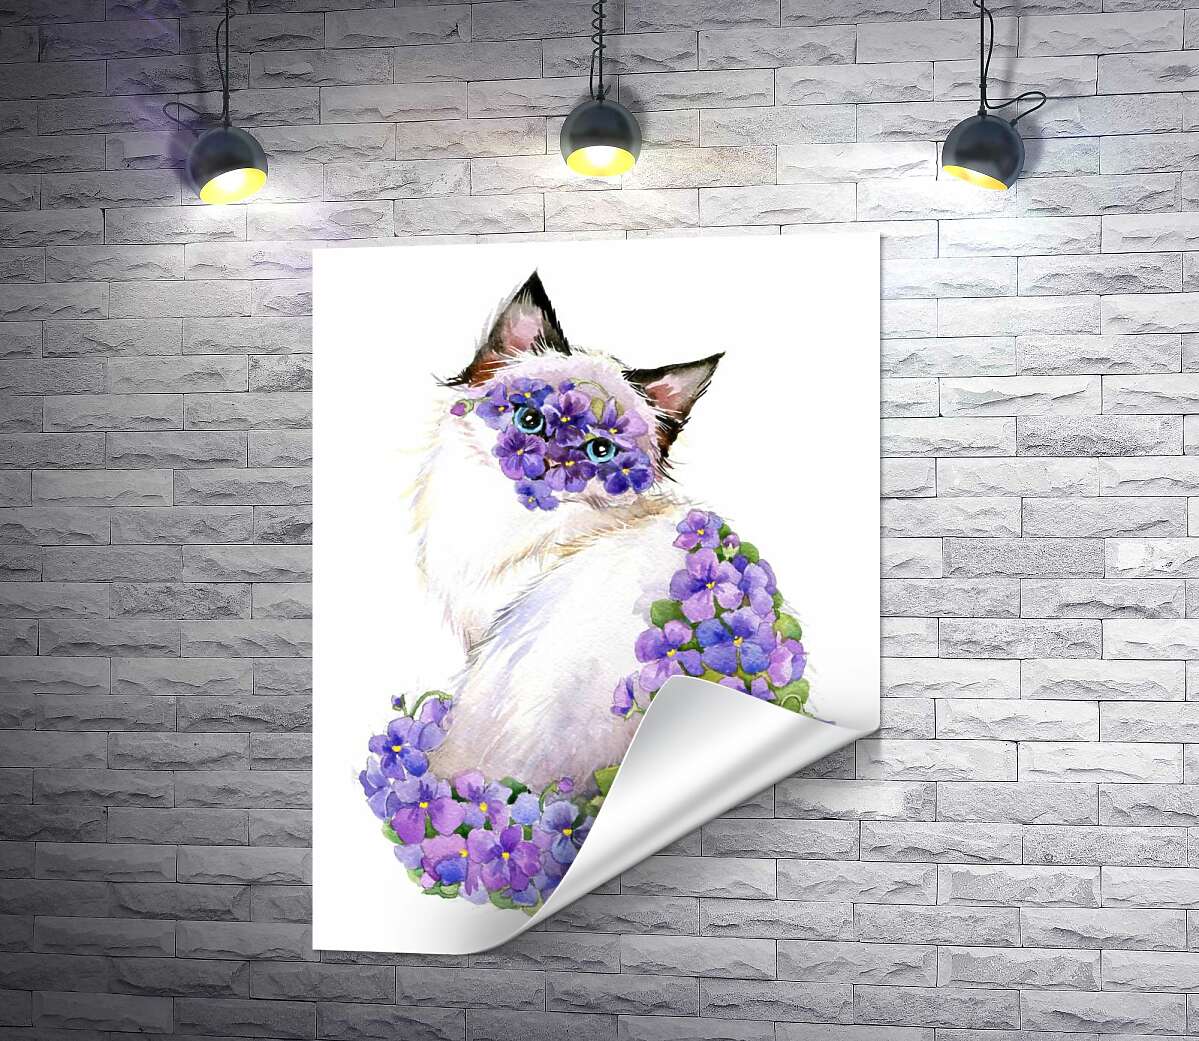 друк Сіамська кішка уквітчана килимом фіалок